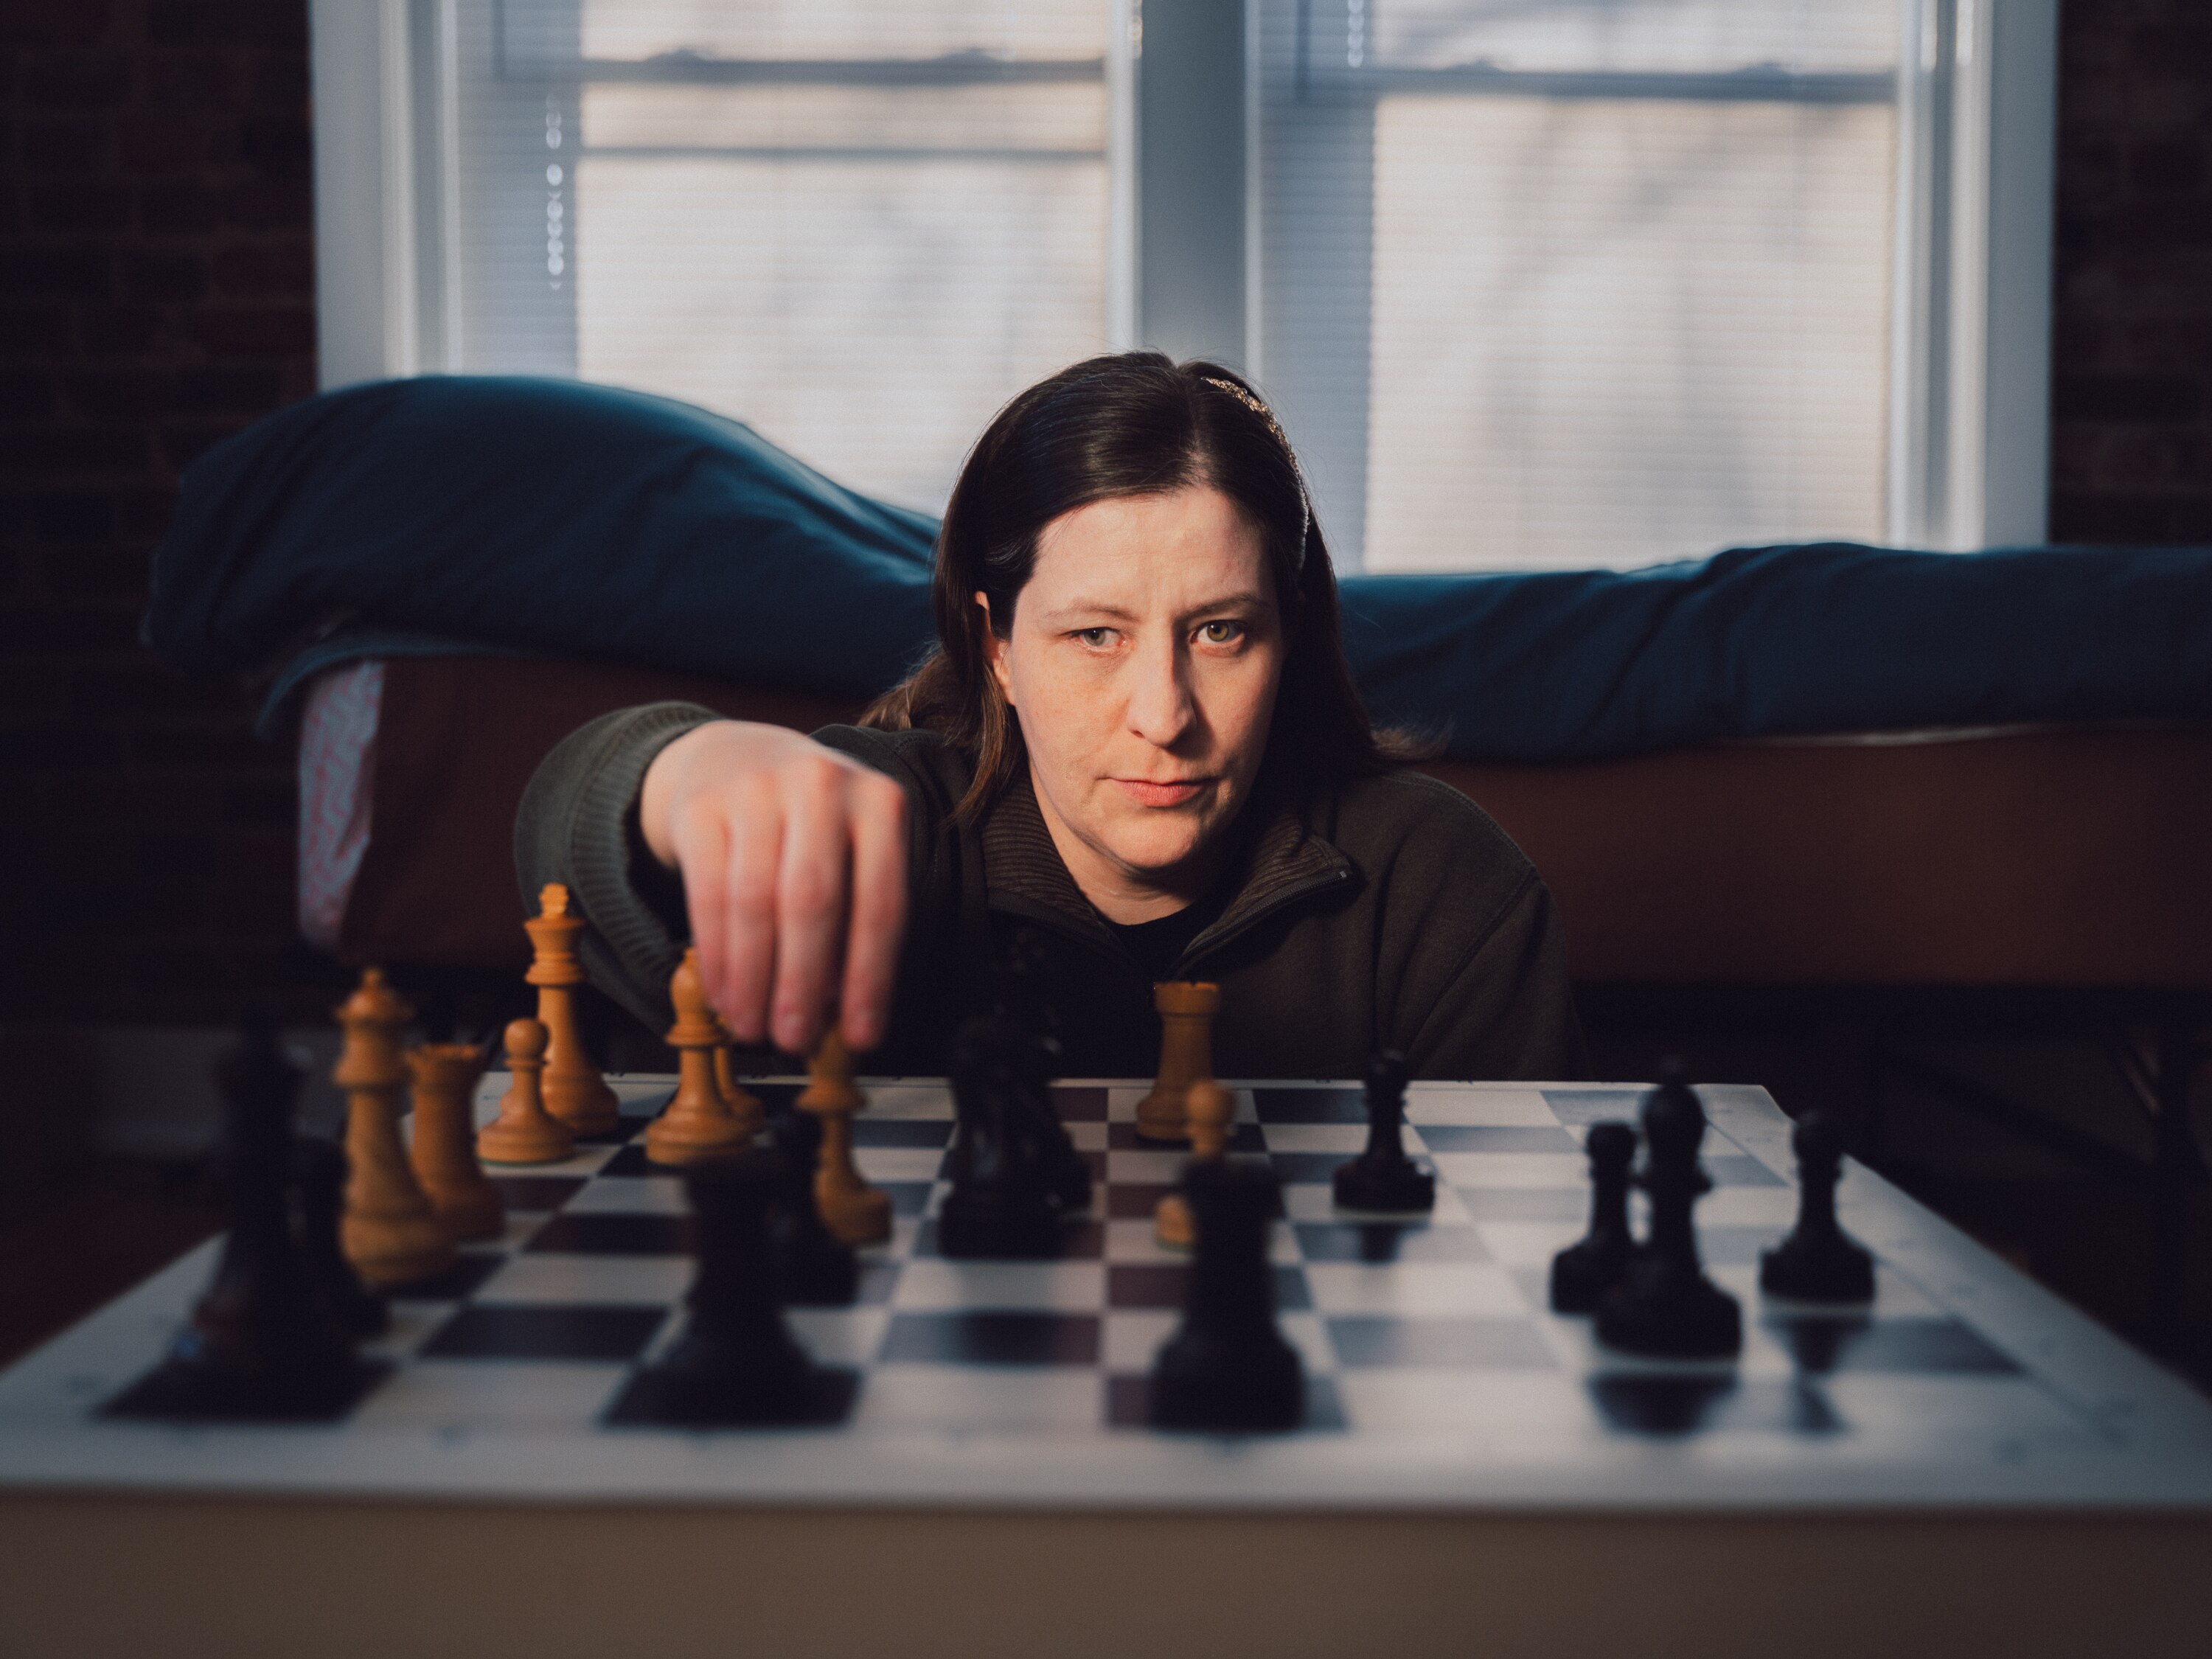 Ela é uma campeã de xadrez que mal consegue enxergar o tabuleiro - Estadão